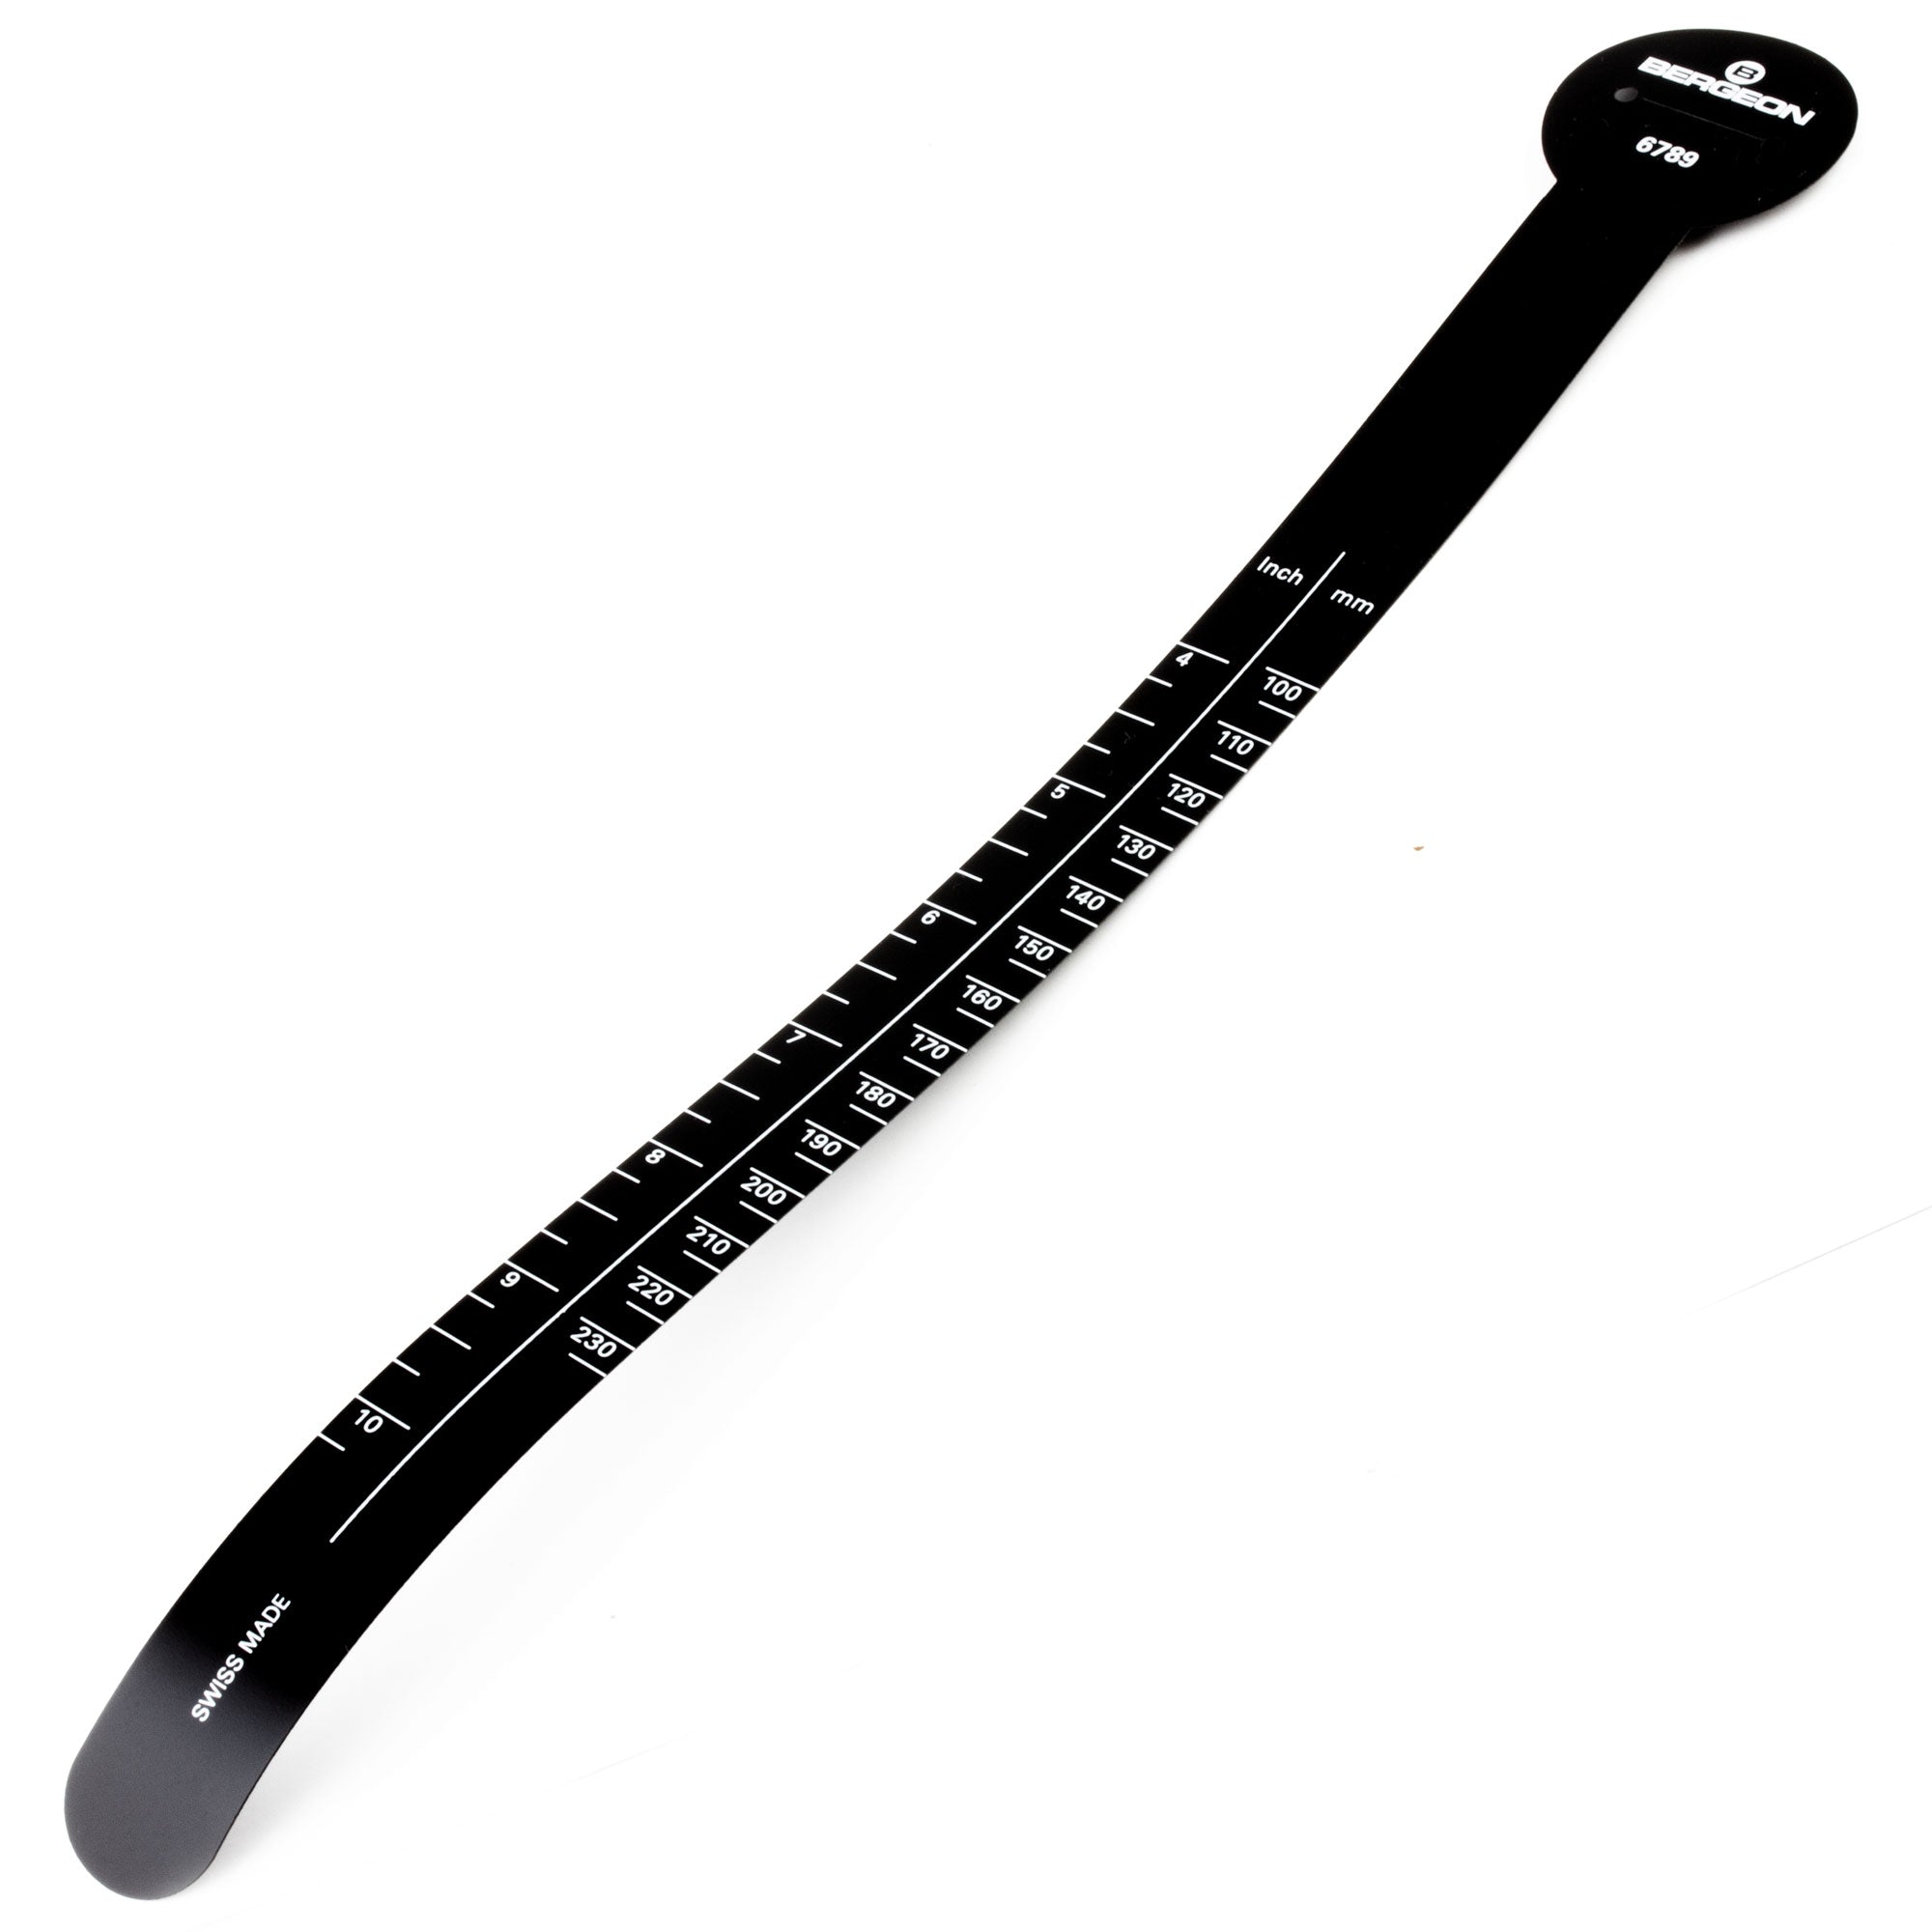 Bergeon wrist measuring band